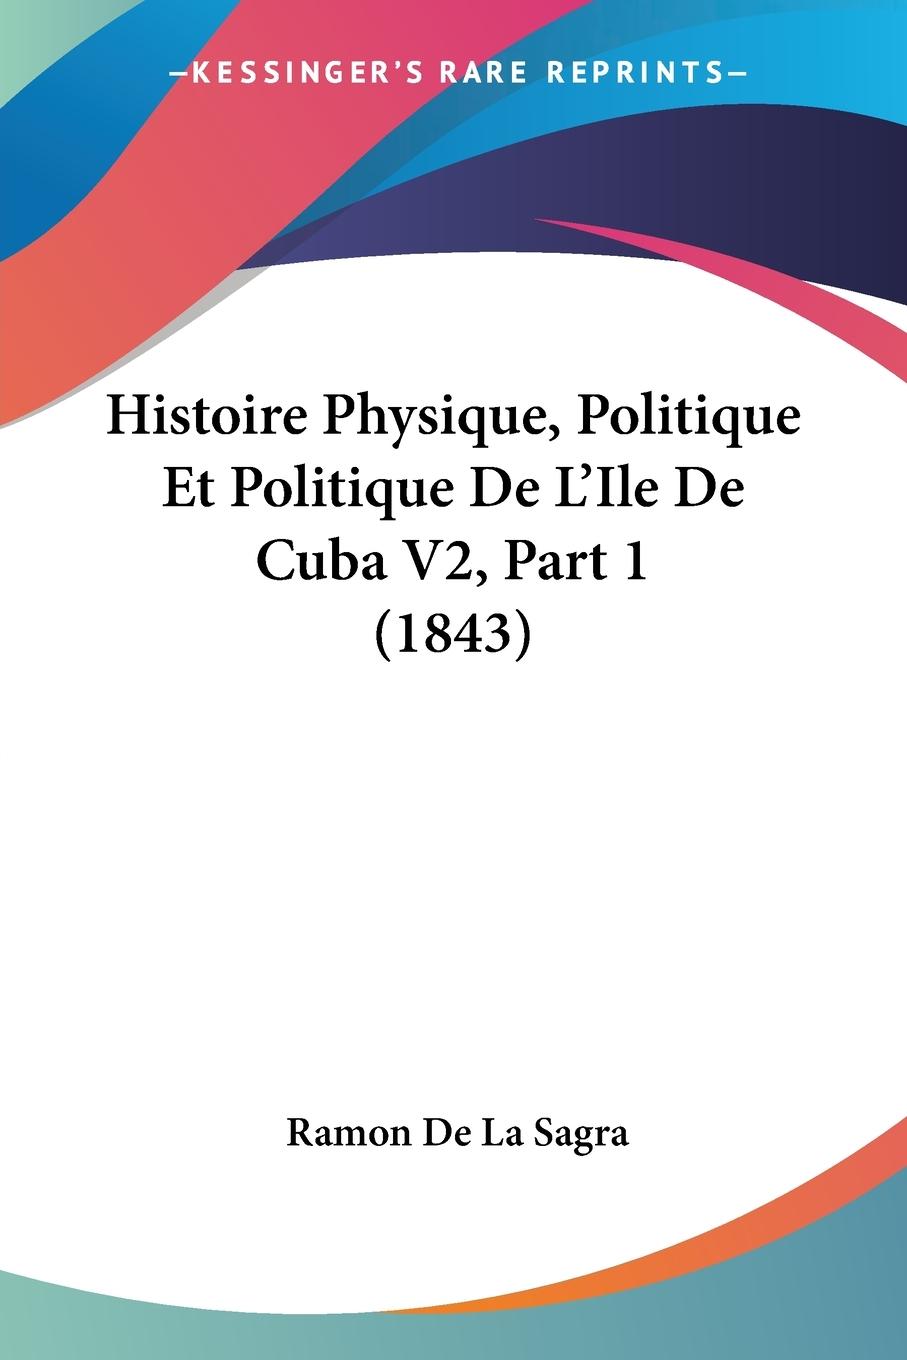 Histoire Physique, Politique Et Politique De L Ile De Cuba V2, Part 1 (1843) - De La Sagra, Ramon